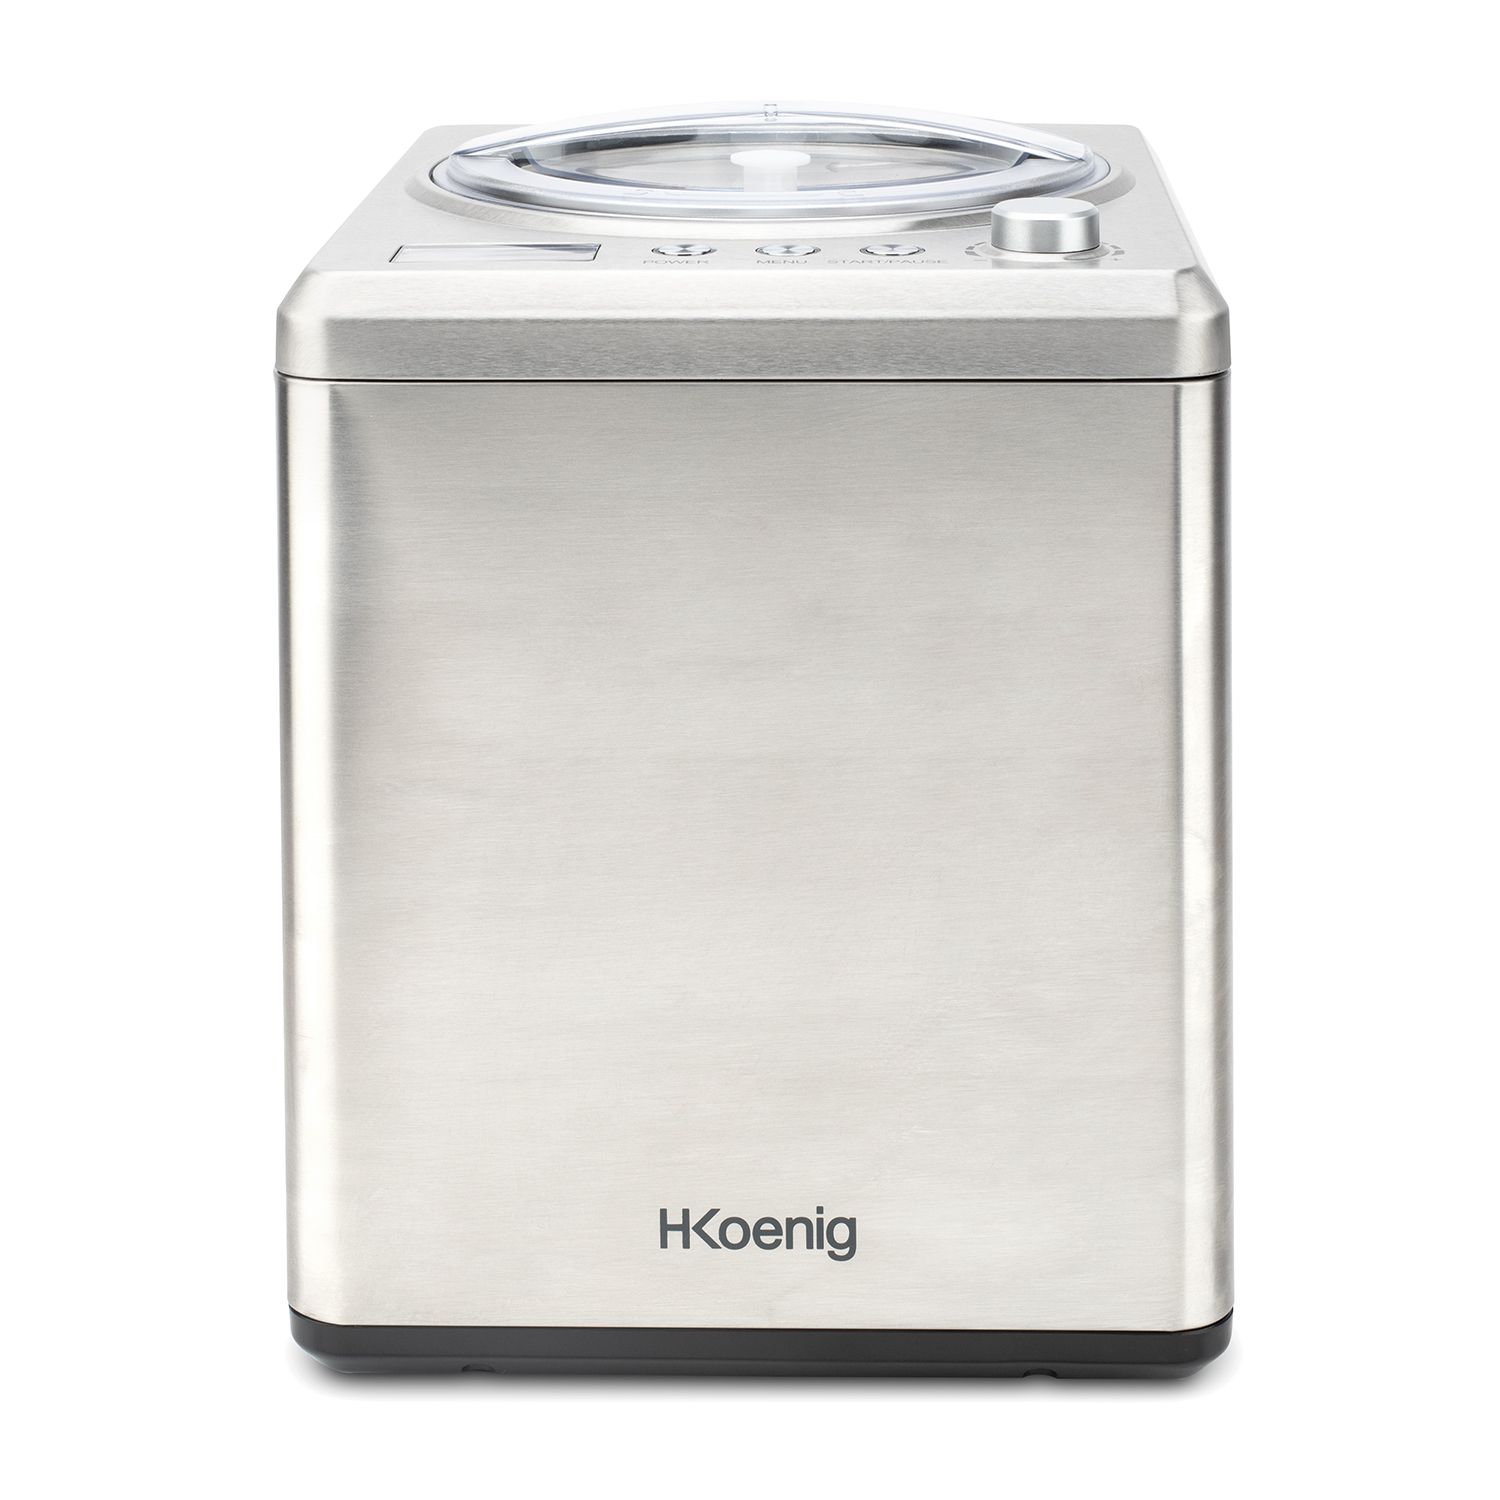 H.KOENIG W Eis, 2 / HF340 Silber) H.Koenig Watt, 180 Eismaschine Sorbet Joghurt, professionelle Kühlfunktion (180 Frozen / L Eiscrememaschine / /